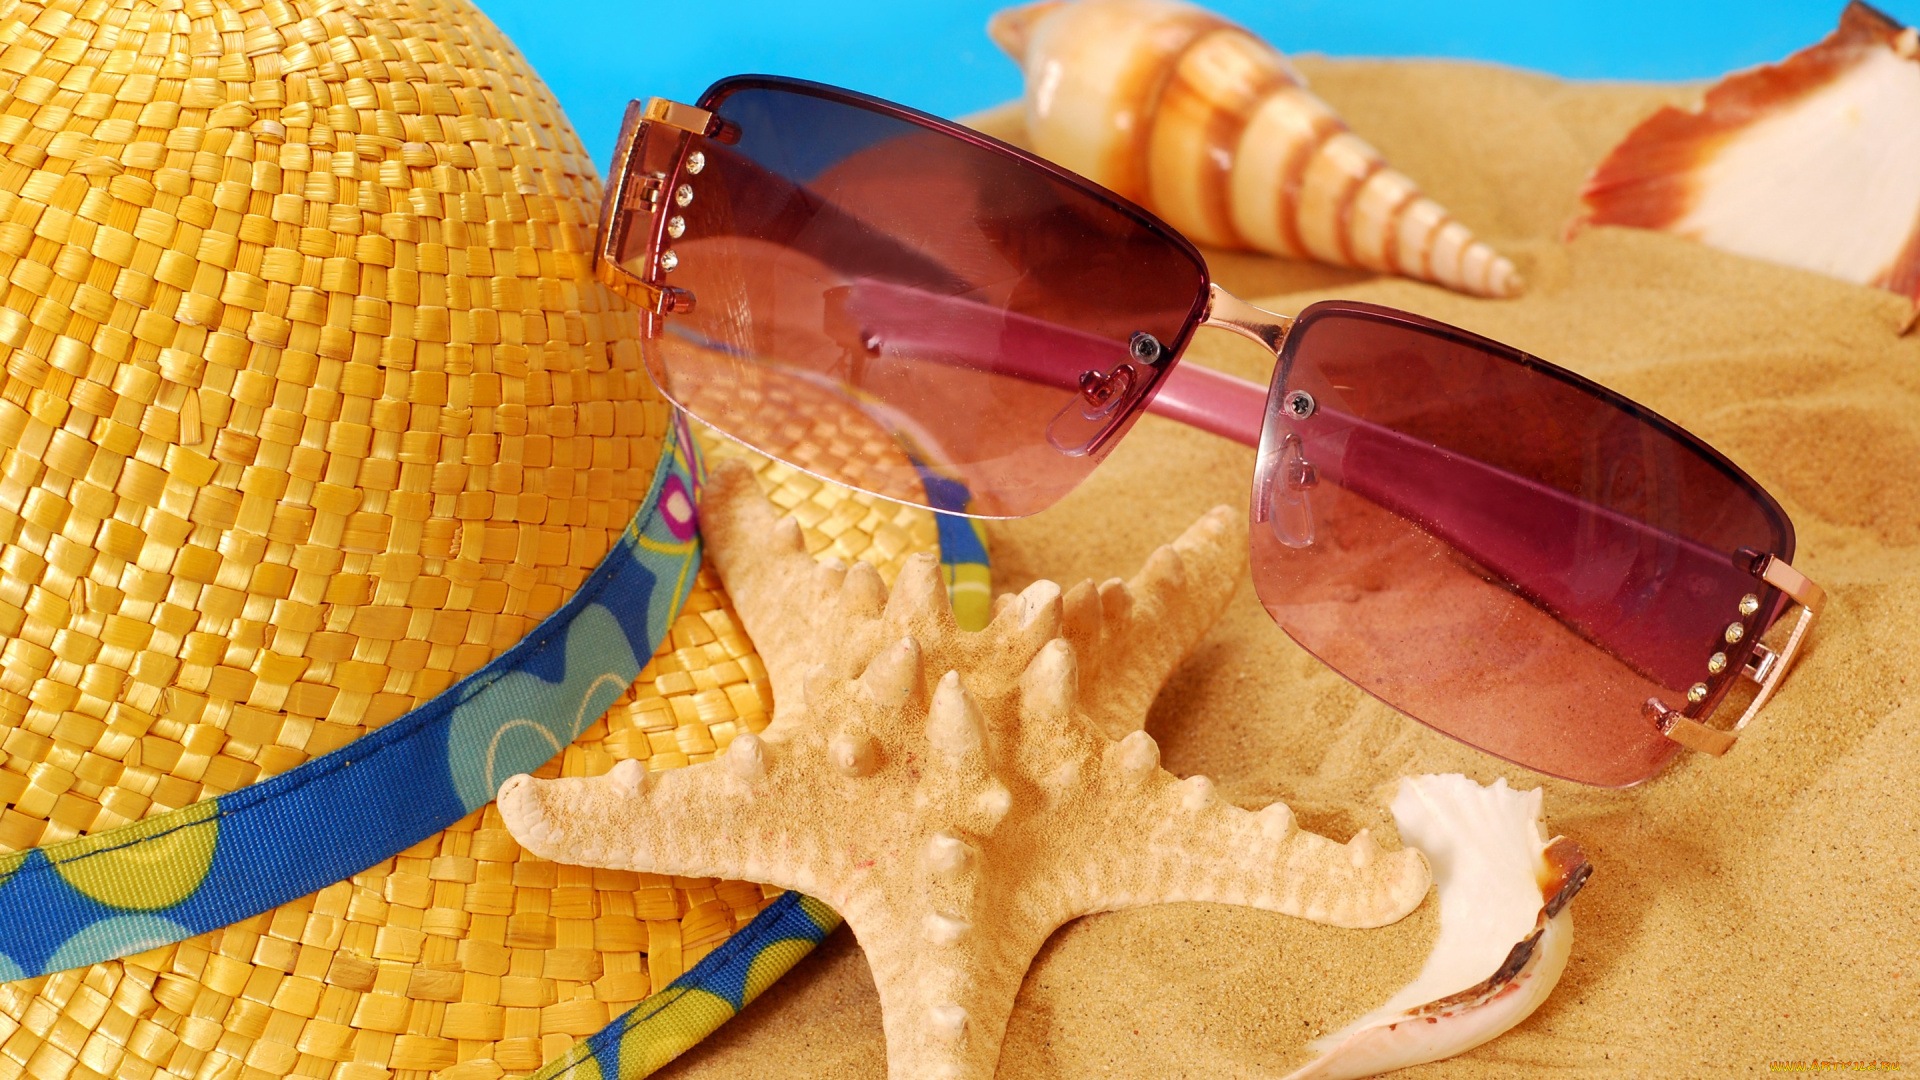 разное, одежда, , обувь, , текстиль, , экипировка, vacation, песок, лето, seashells, пляж, starfish, sand, accessories, summer, beach, ракушки, очки, шляпа